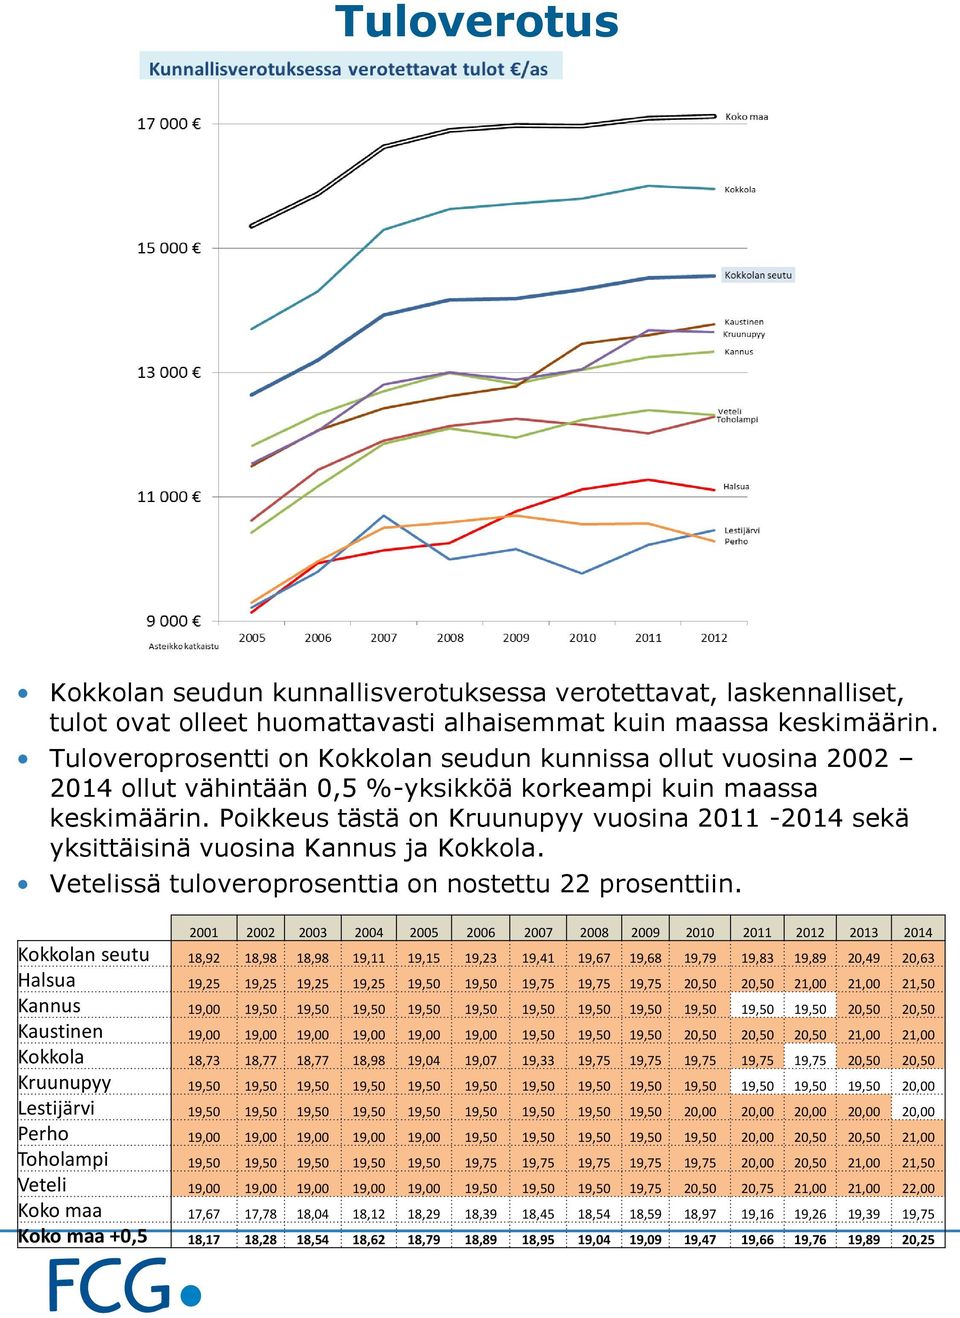 Poikkeus tästä on Kruunupyy vuosina 2011-2014 sekä yksittäisinä vuosina Kannus ja Kokkola. Vetelissä tuloveroprosenttia on nostettu 22 prosenttiin.